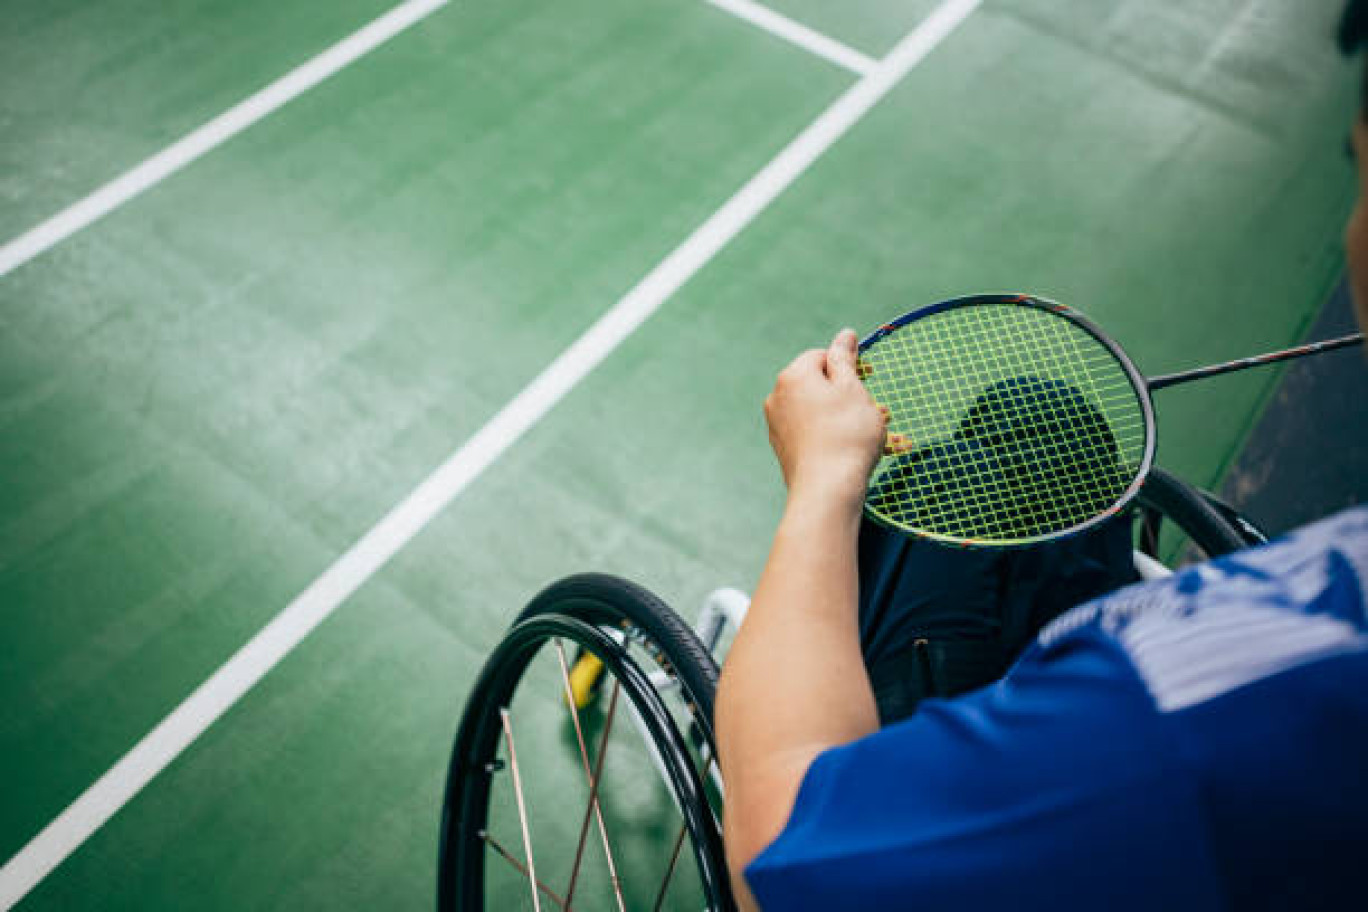 Paris 2024 doit permettre de multiplier les portes ouvertes vers la pratique sportive aux personnes en situation de handicap partout en France. 